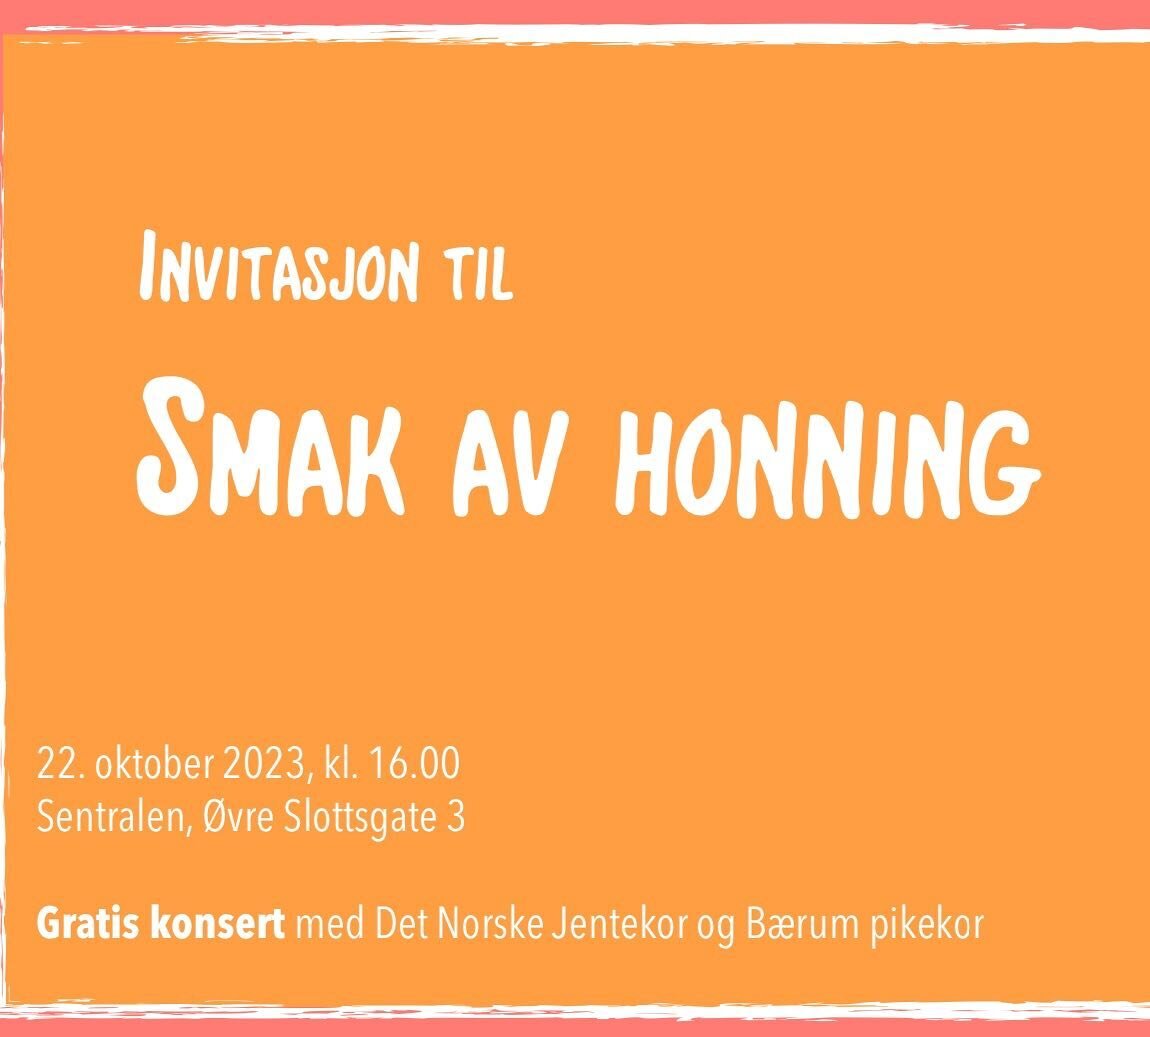 Barnekor i Oslo! @detnorskejentekor og @baerumpikekor inviterer til gratis sing-along konsert med &laquo;Smak av honning&raquo;! 🔆

22. oktober 2023, kl 16.00
Meld koret p&aring; via epost: post@detnorskejentekor.no 

&laquo;Smak av honning&raquo; e